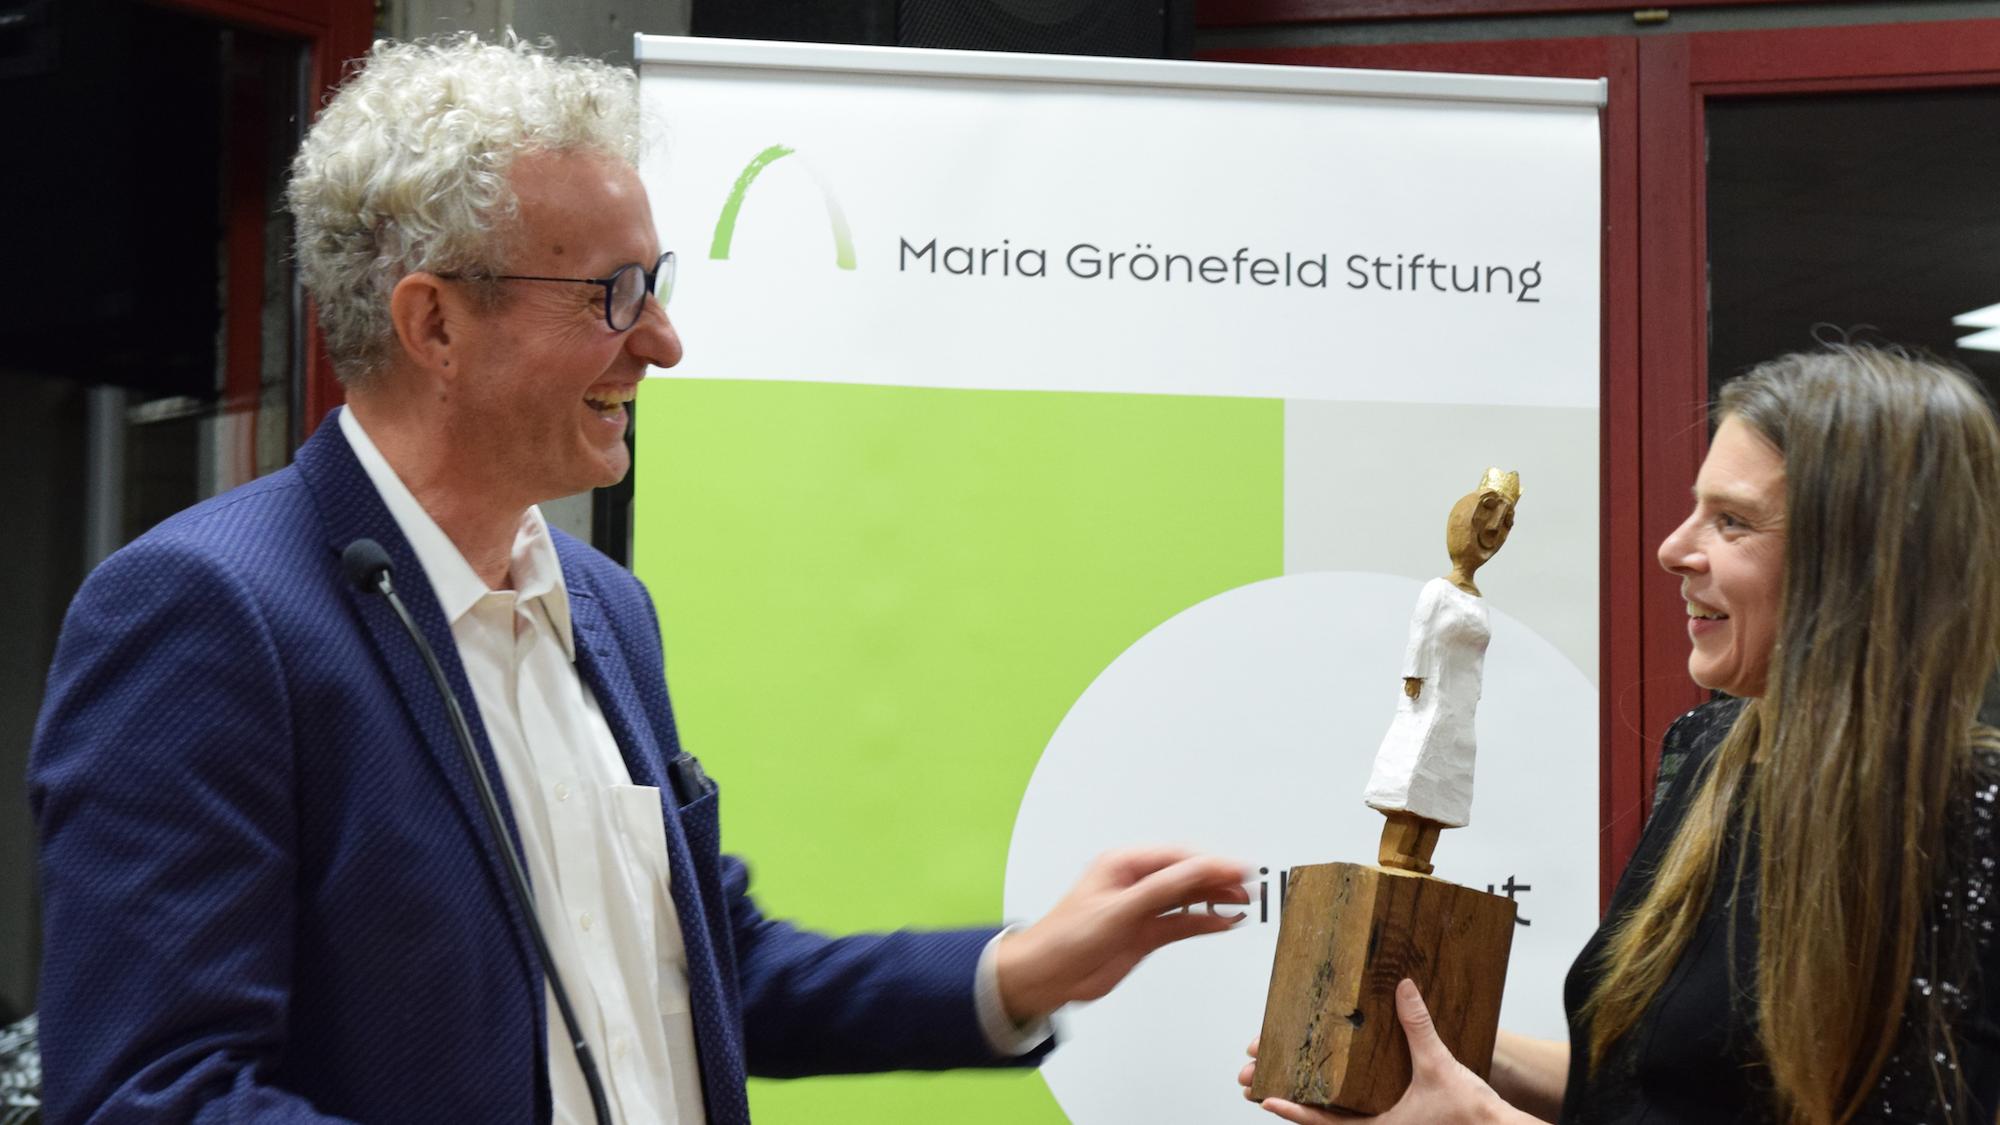 Der große Moment: Aus den Händen des Kuratoriumsvorsitzenden Manfred Körber erhält Christiane Florin den Maria-Grönefeld-Preis. Sie bekräftigte, dass sie diese Würdigung stärke. Ansonsten erfahre sie eher Gegenwind und Anfeindungen in ihrem Einsatz für eine geschlechtergerechte Kirche. (c) Thomas Hohenschue